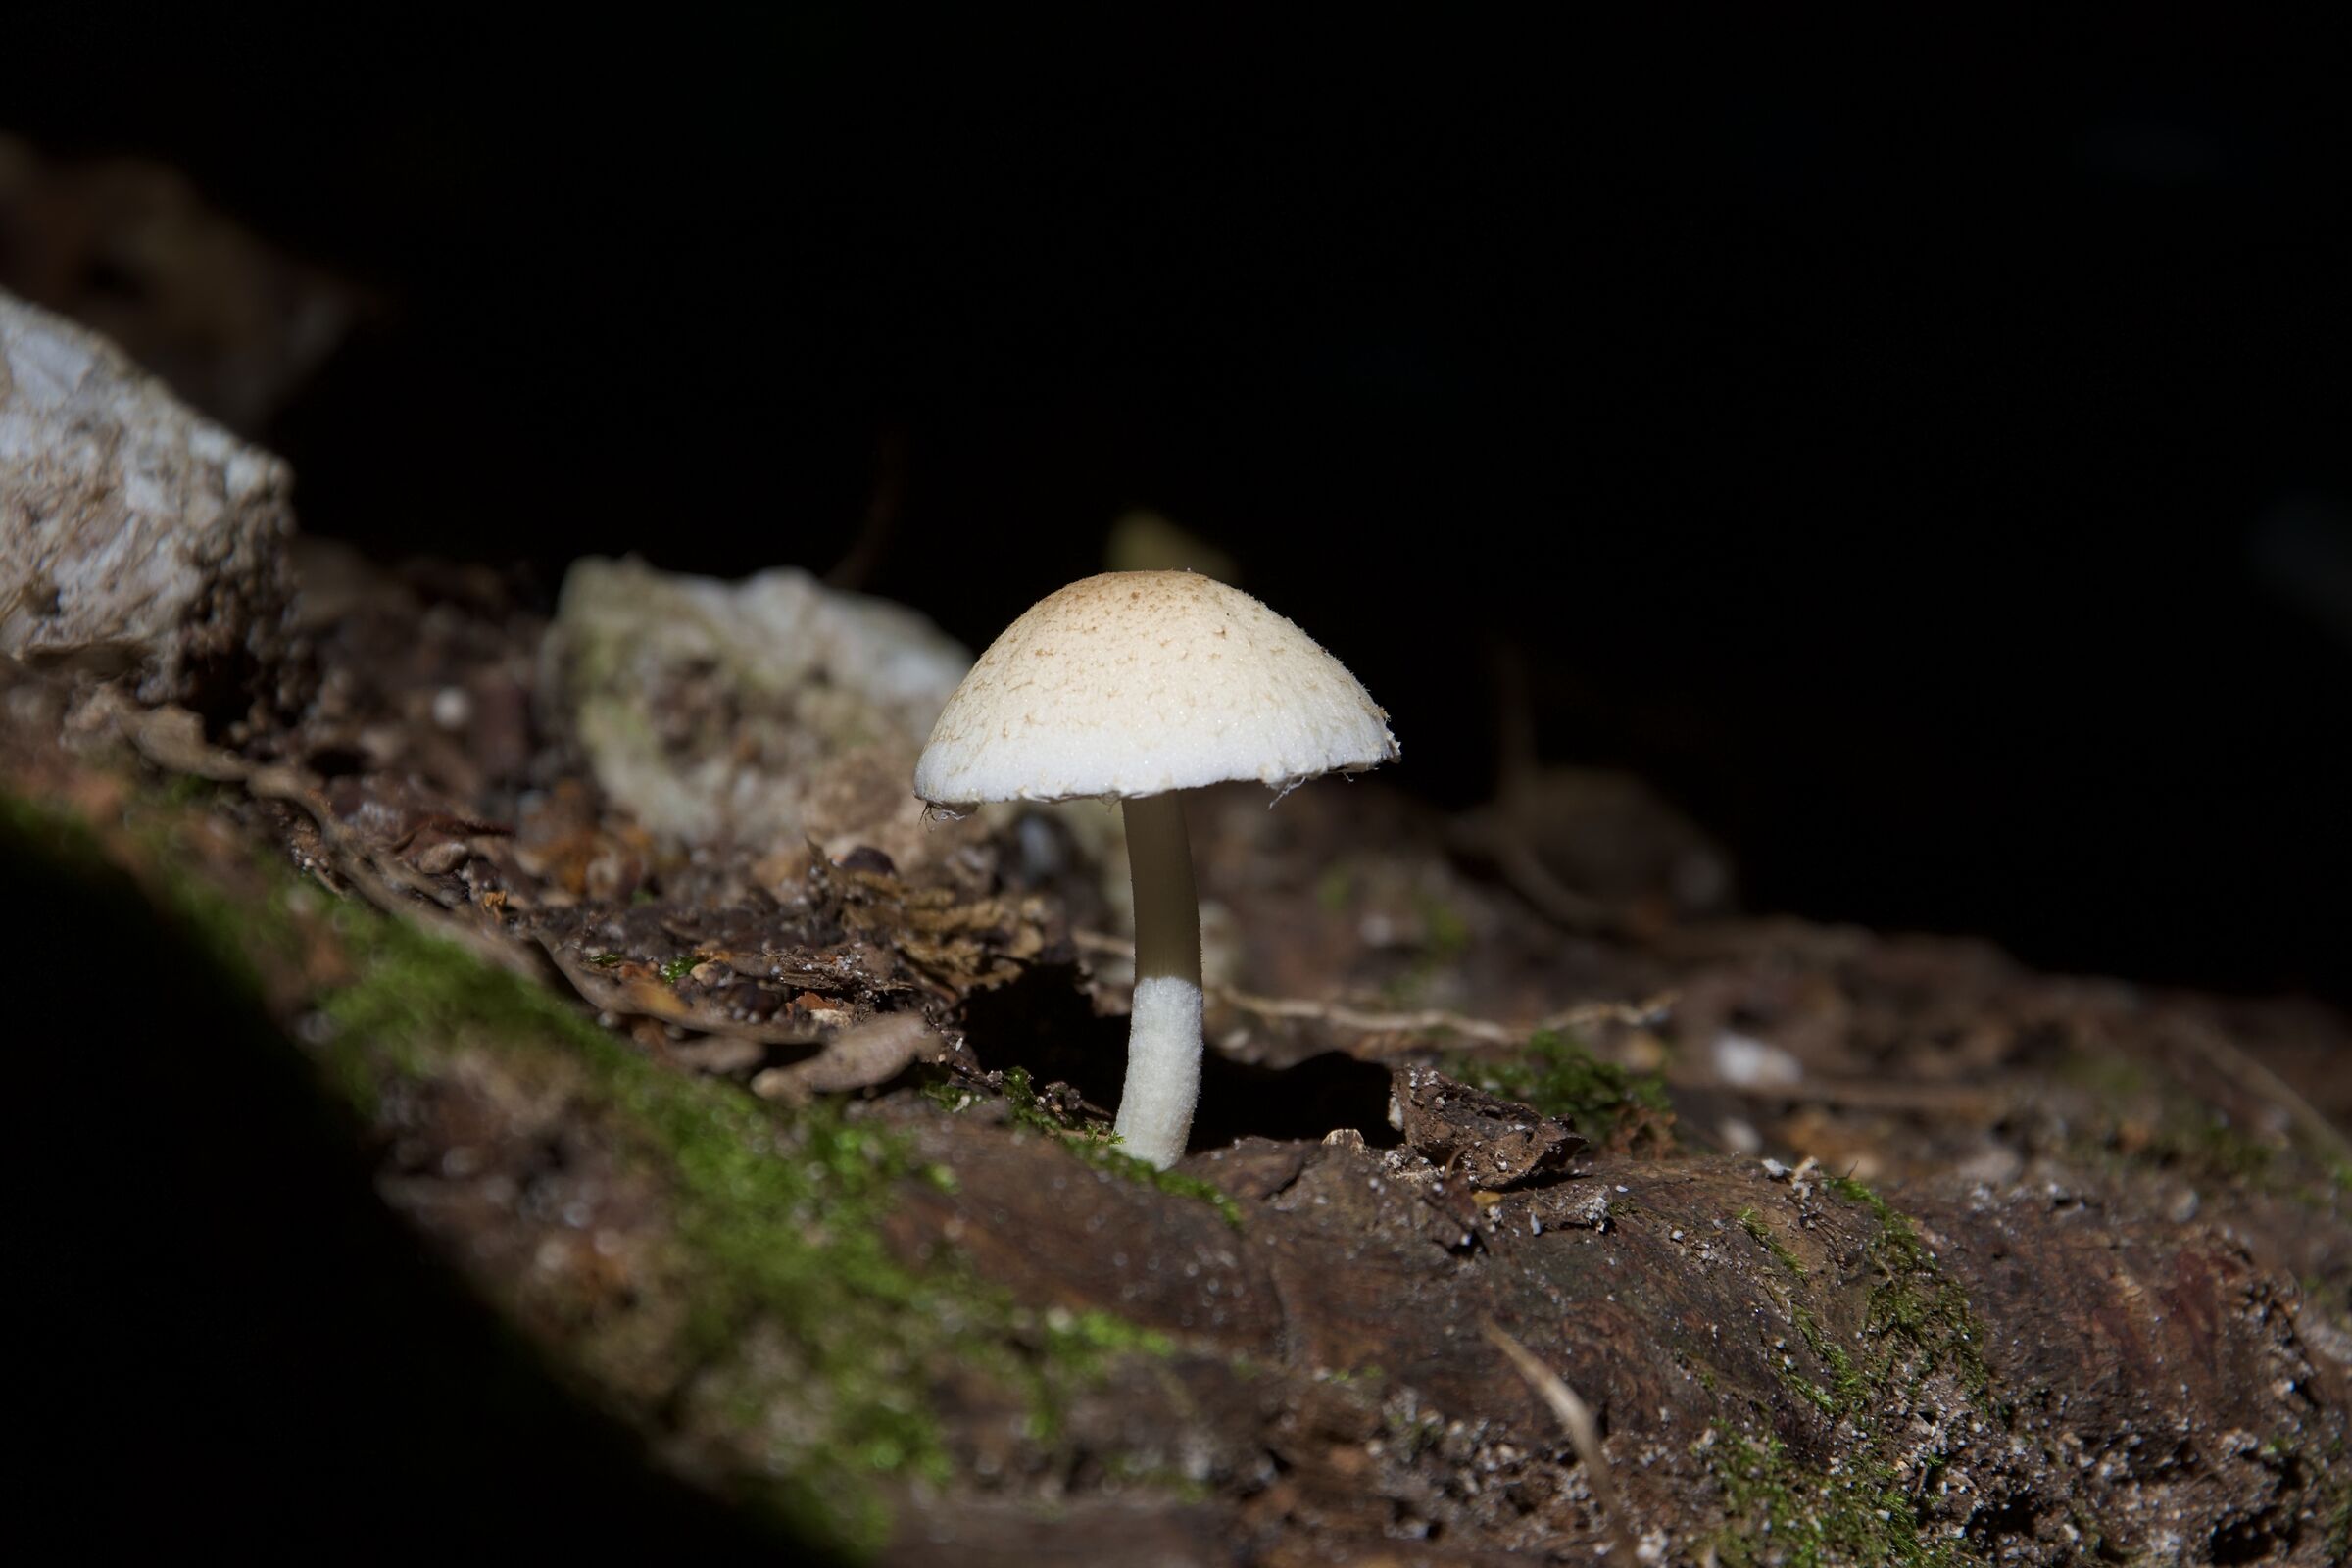 A mushroom...